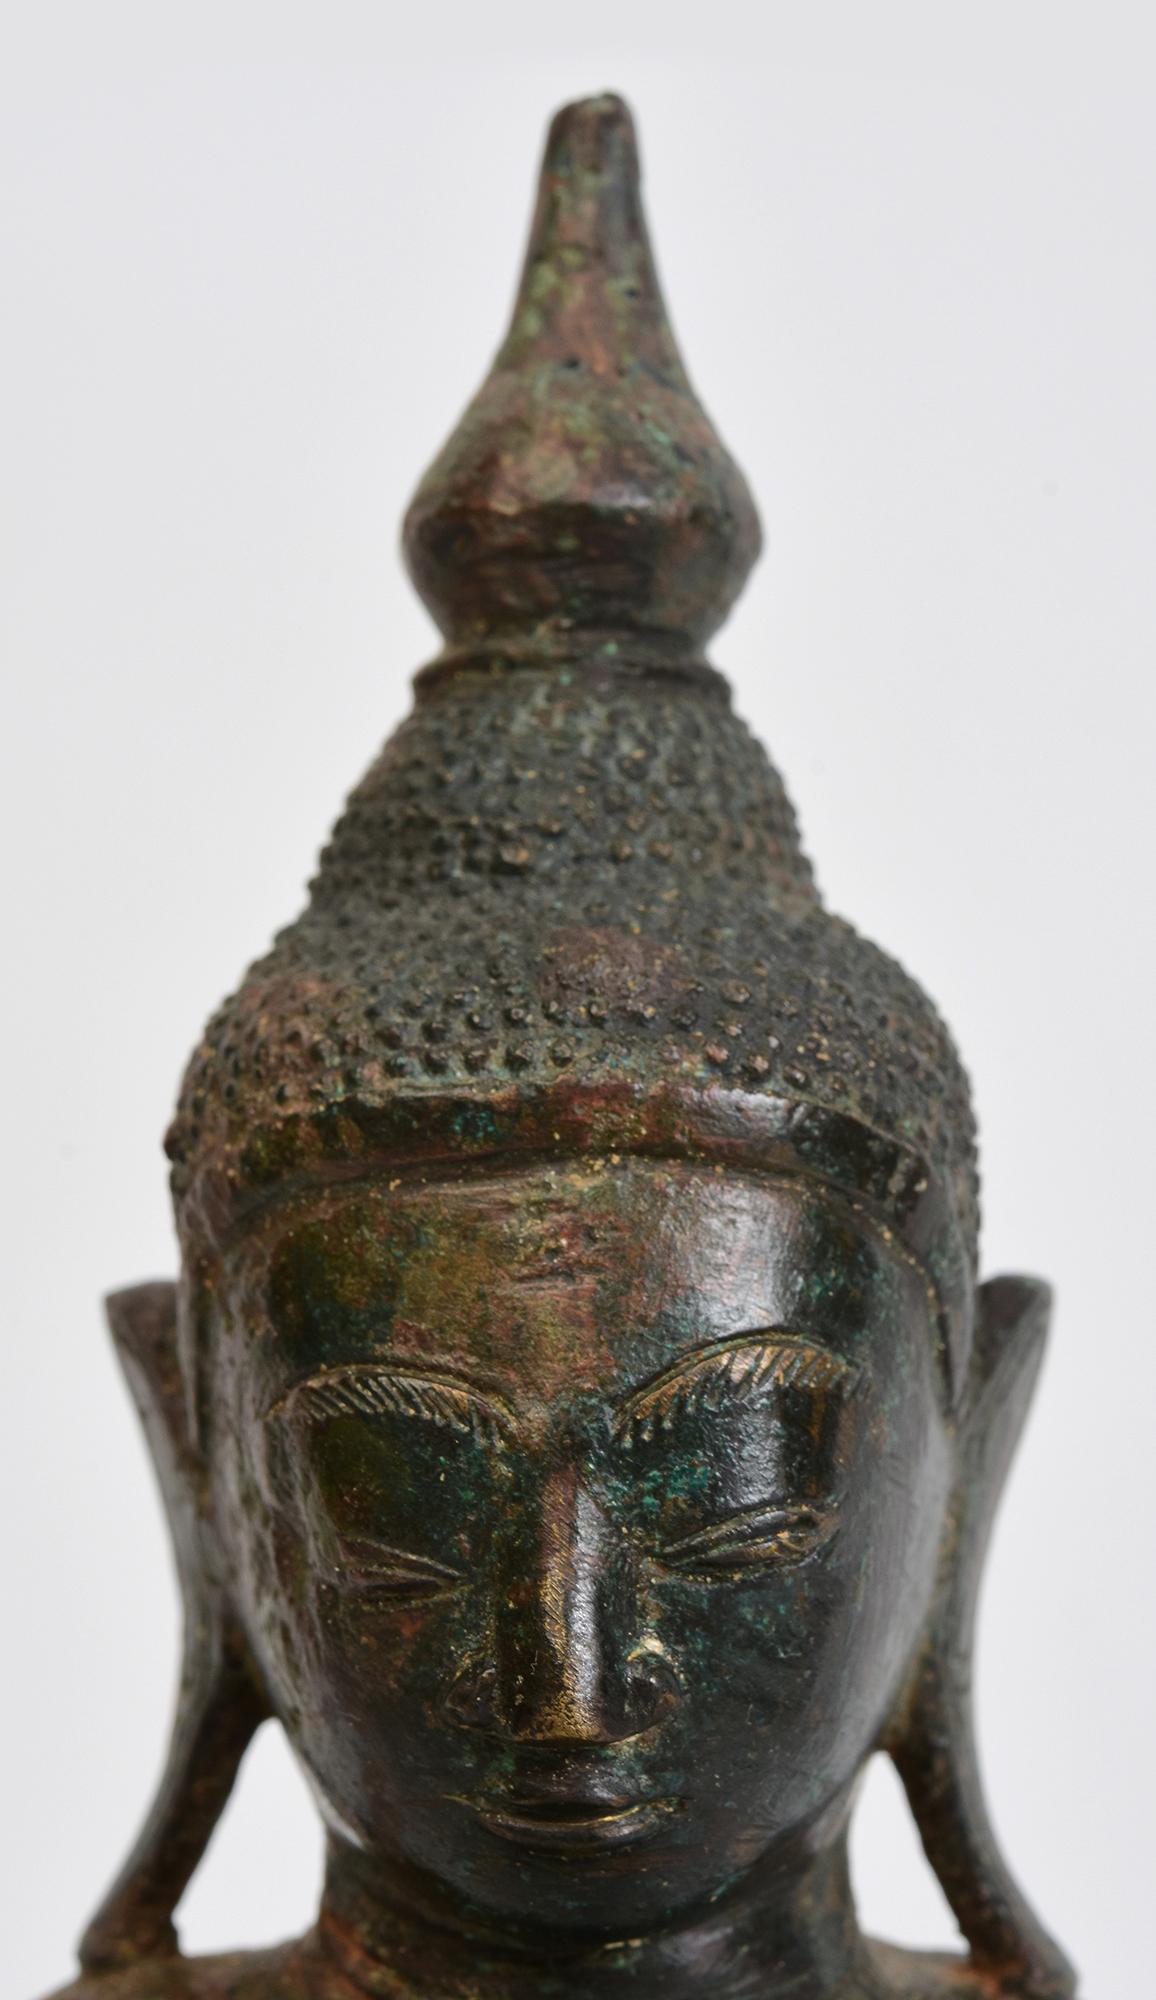 Antiker burmesischer Bronze-Buddha in Mara-Vijaya-Haltung (die Erde zum Zeugen rufen) auf einem Sockel.

Alter: Birma, Shan-Zeit, 17. Jahrhundert
Größe: Höhe 26,2 C.M. / Breite 14,5 C.M. / Tiefe 8,2 C.M.
Zustand: Insgesamt guter Zustand (einige